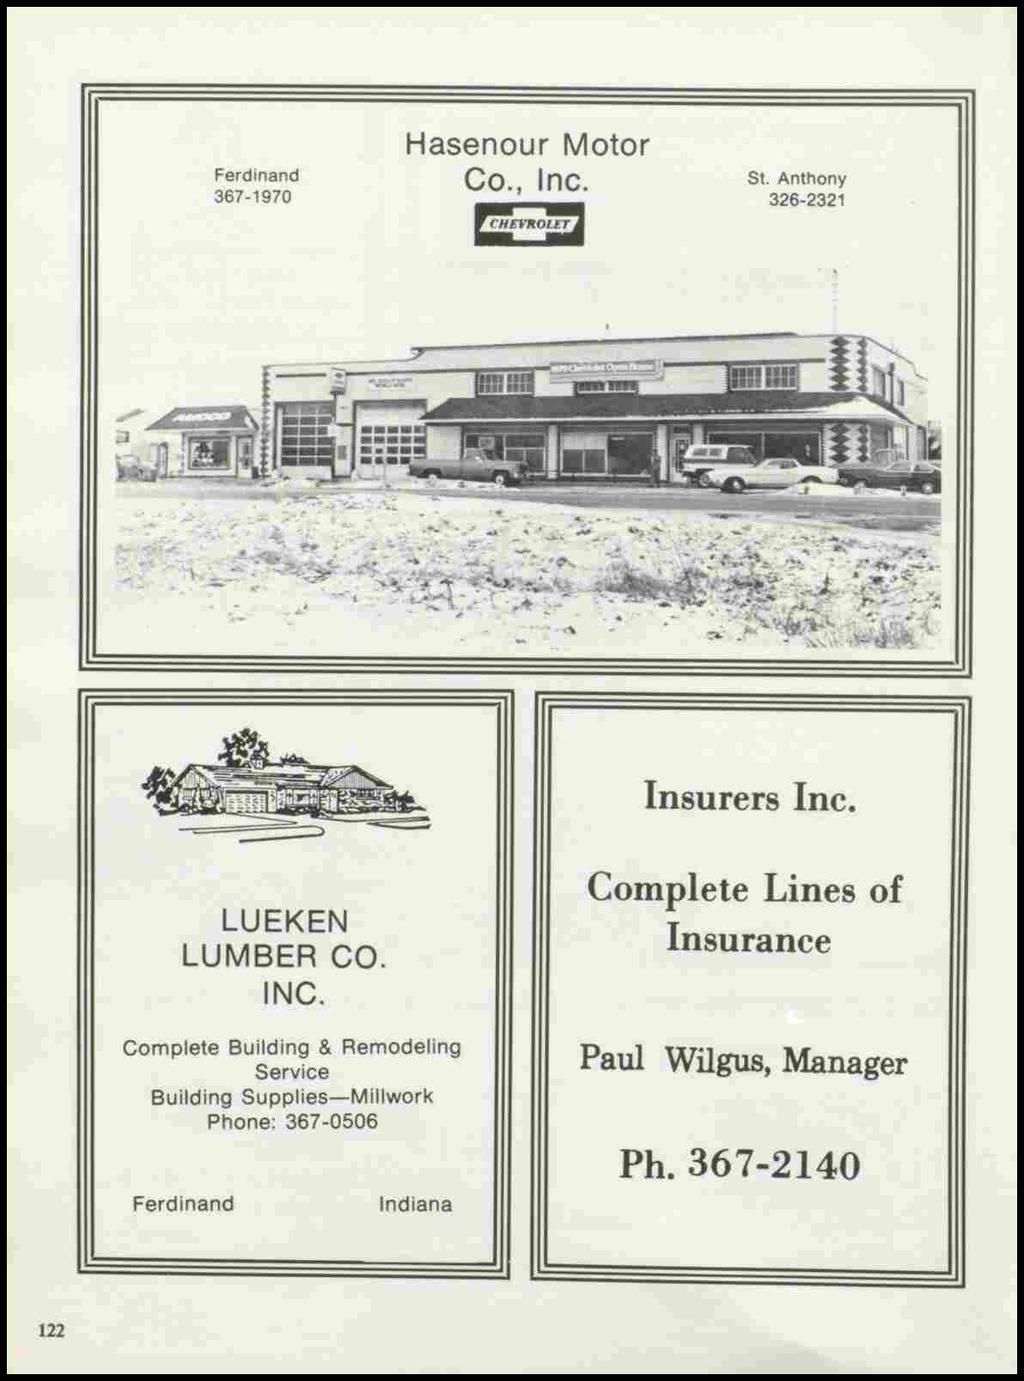 Ferdinand 367-1970 Hasenour Motor Co., Inc. St. Anthony 326-2321 Insurers Inc. LUEKEN LUMBER CO. INC.